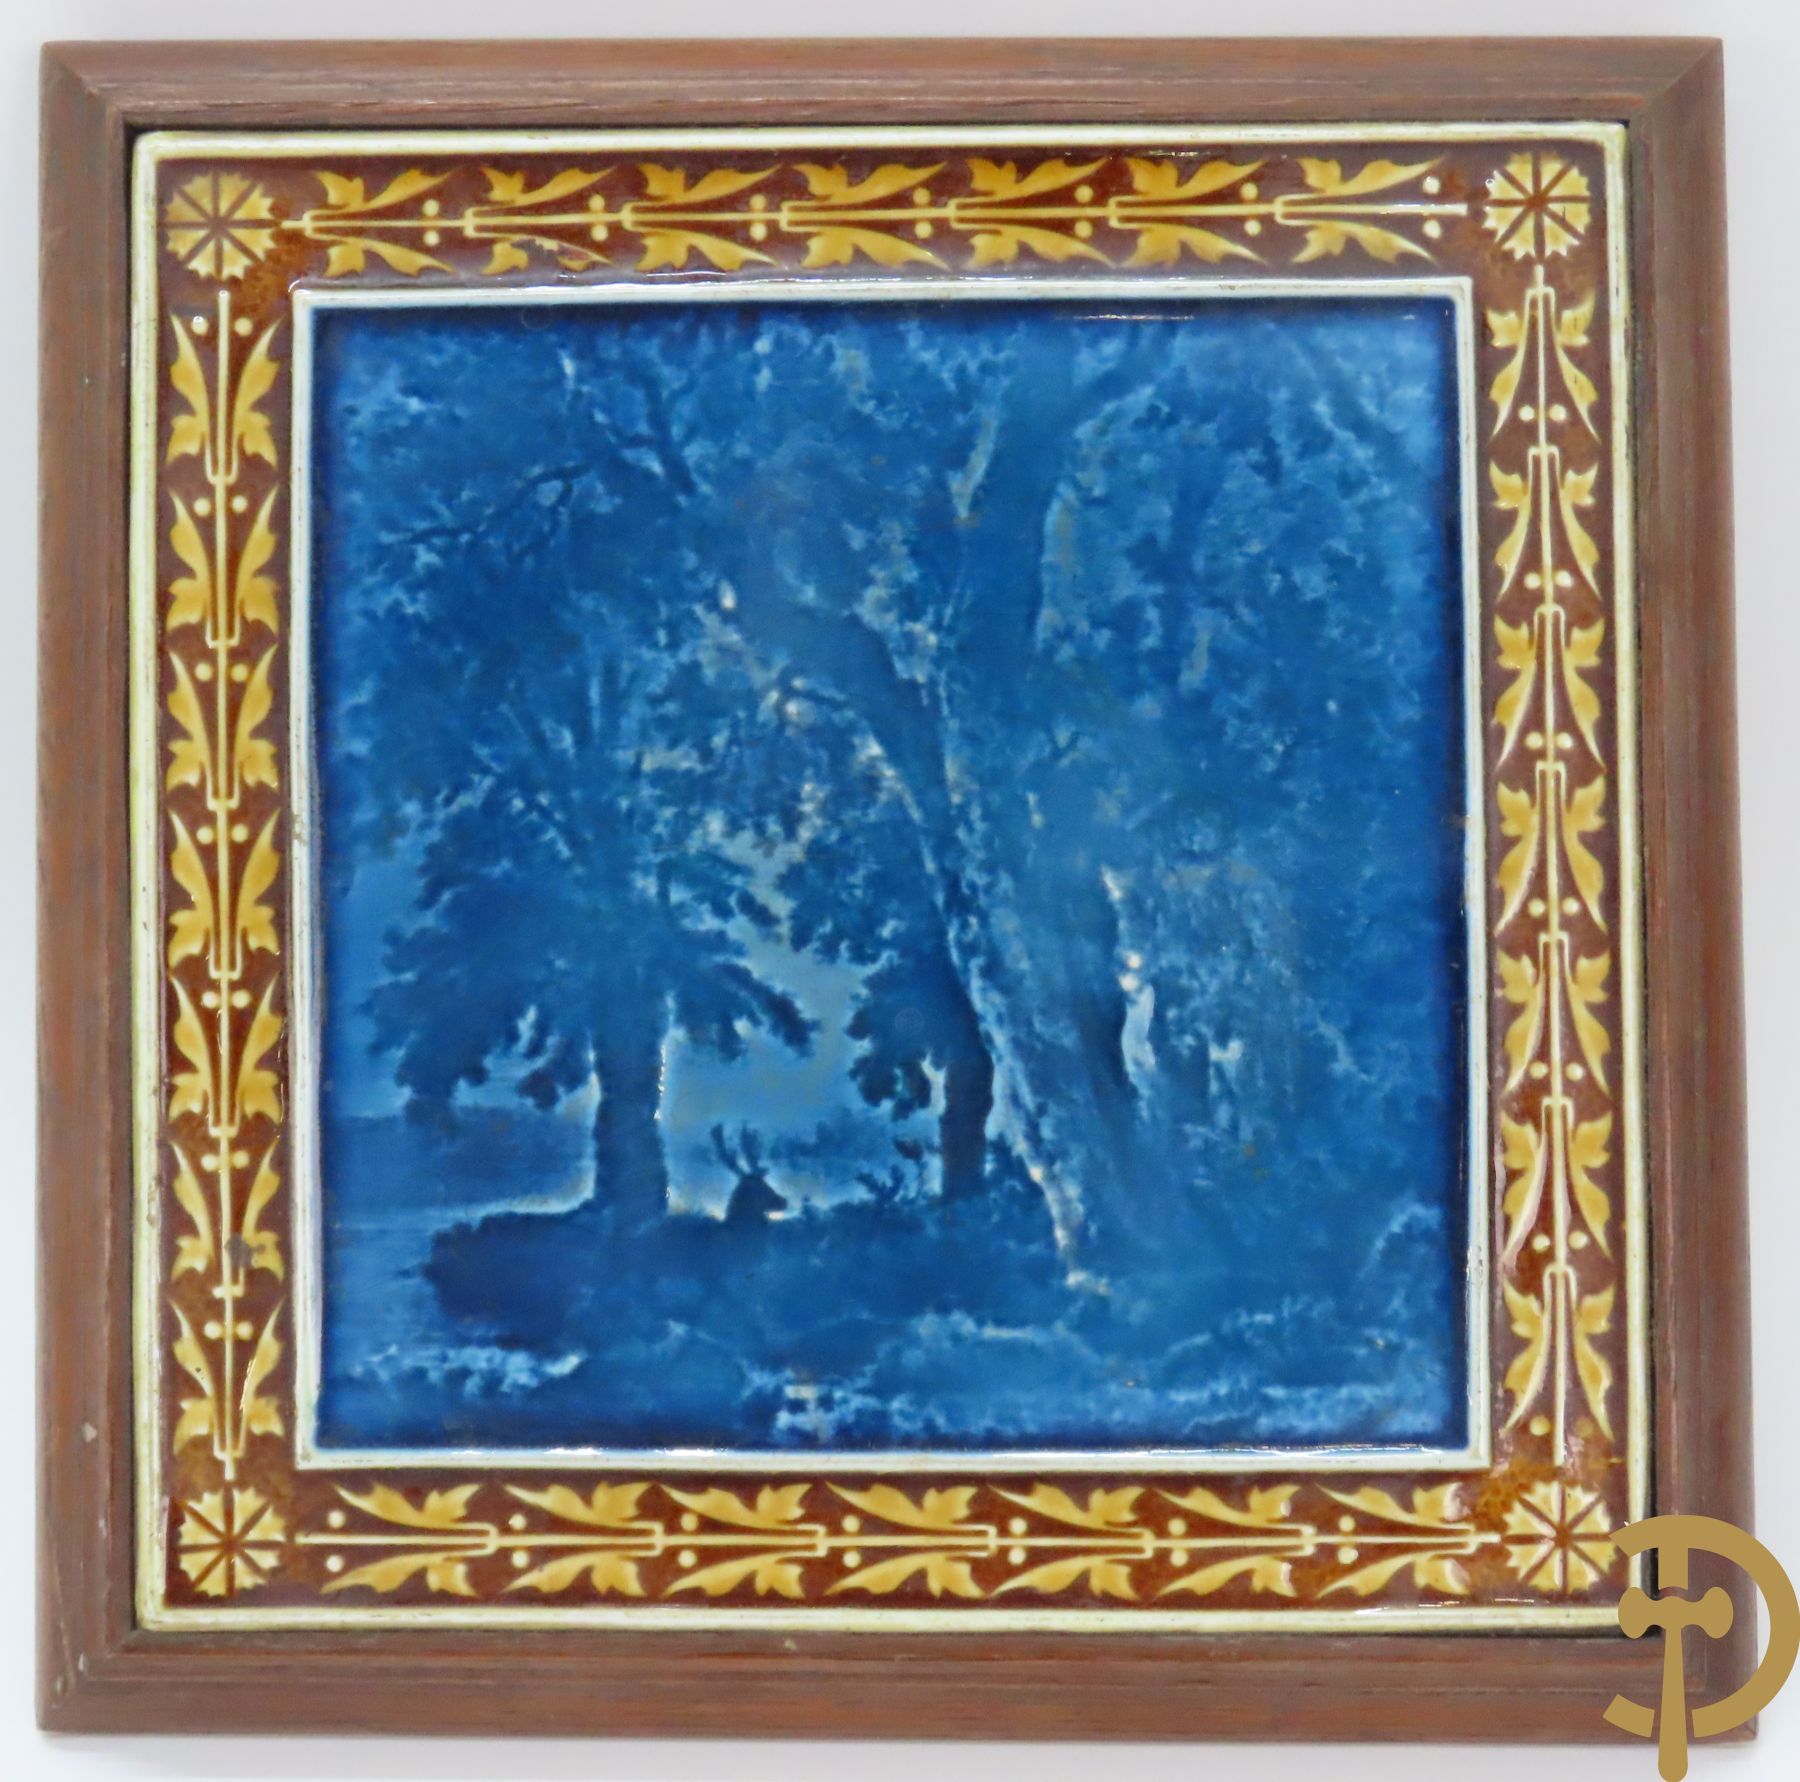 Kobaltblauwe cachepot met verguld decor van meanderende bloemen, BFK 471 gemerkt onderaan + tegeltableau met landschap in houten lijst, Villeroy & Boch Mettlach